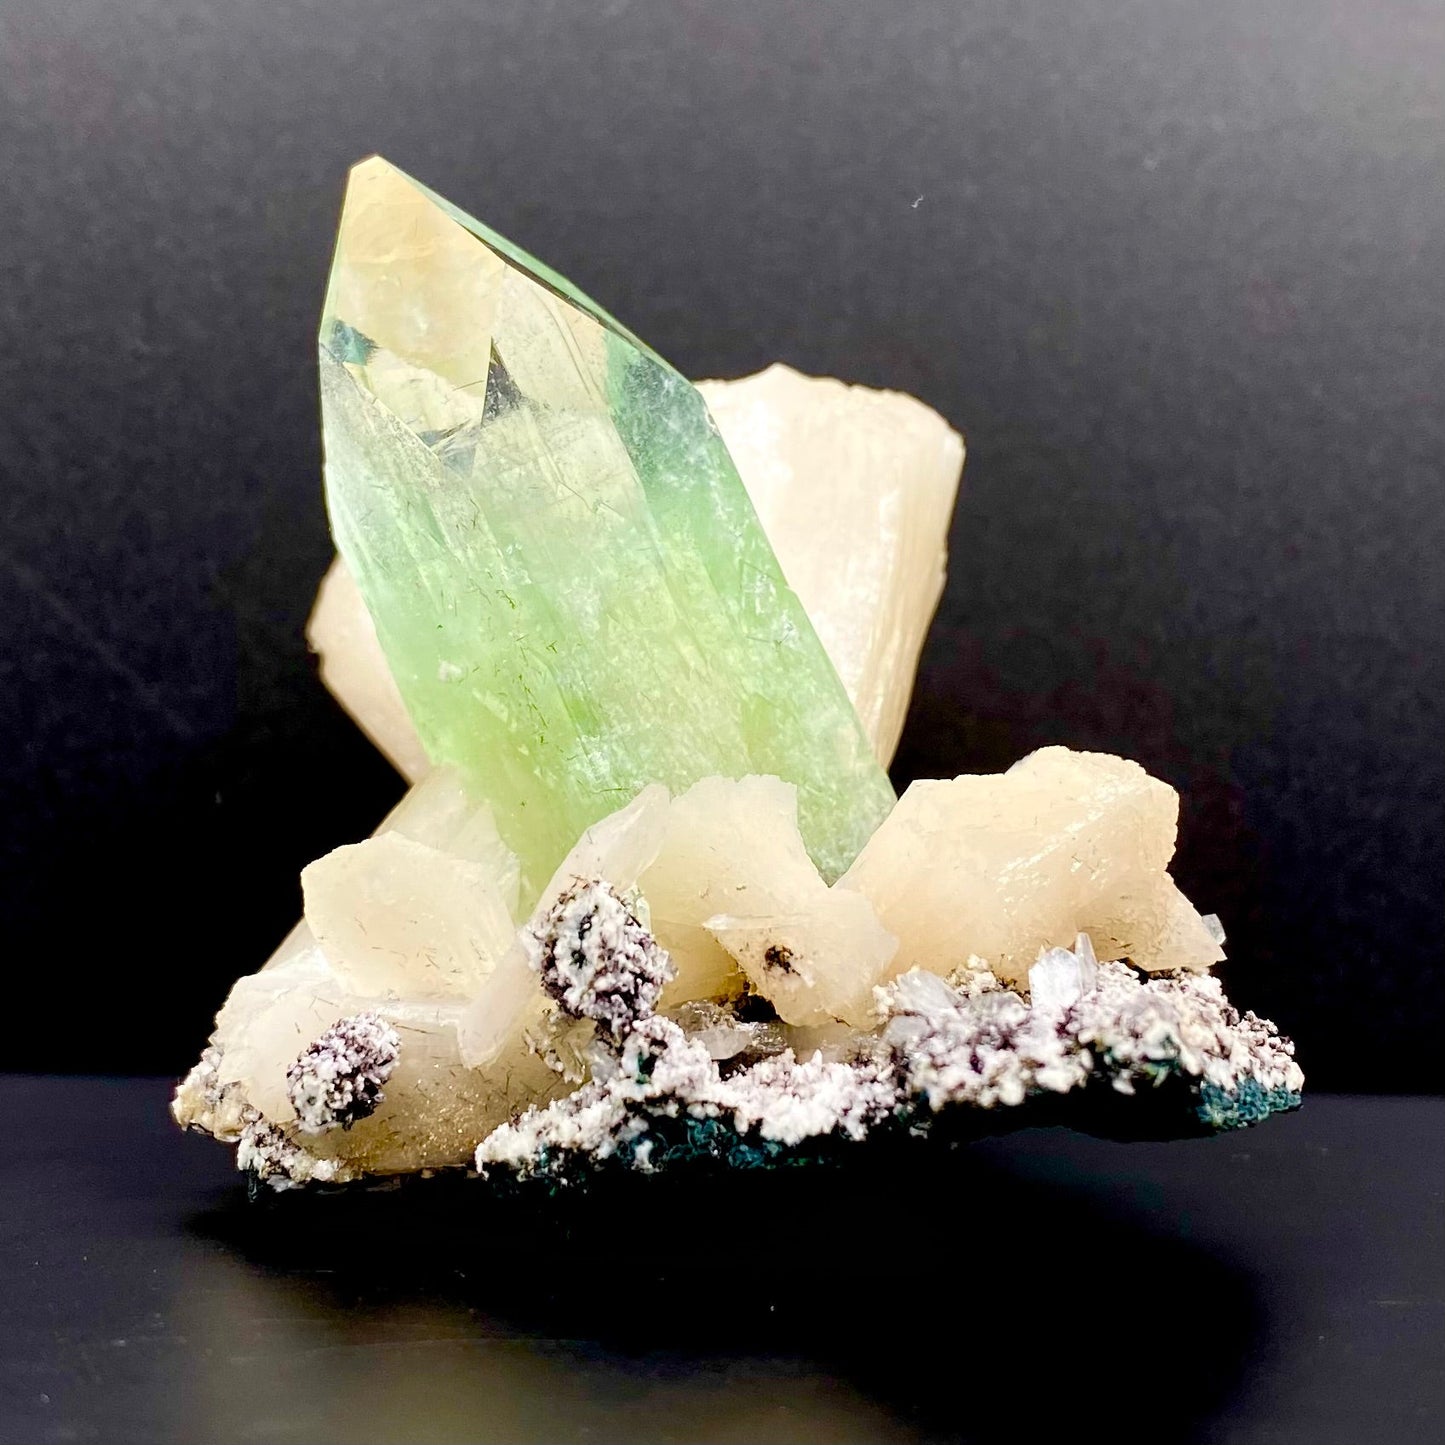 Apophyllite DK85 Superb Minerals 